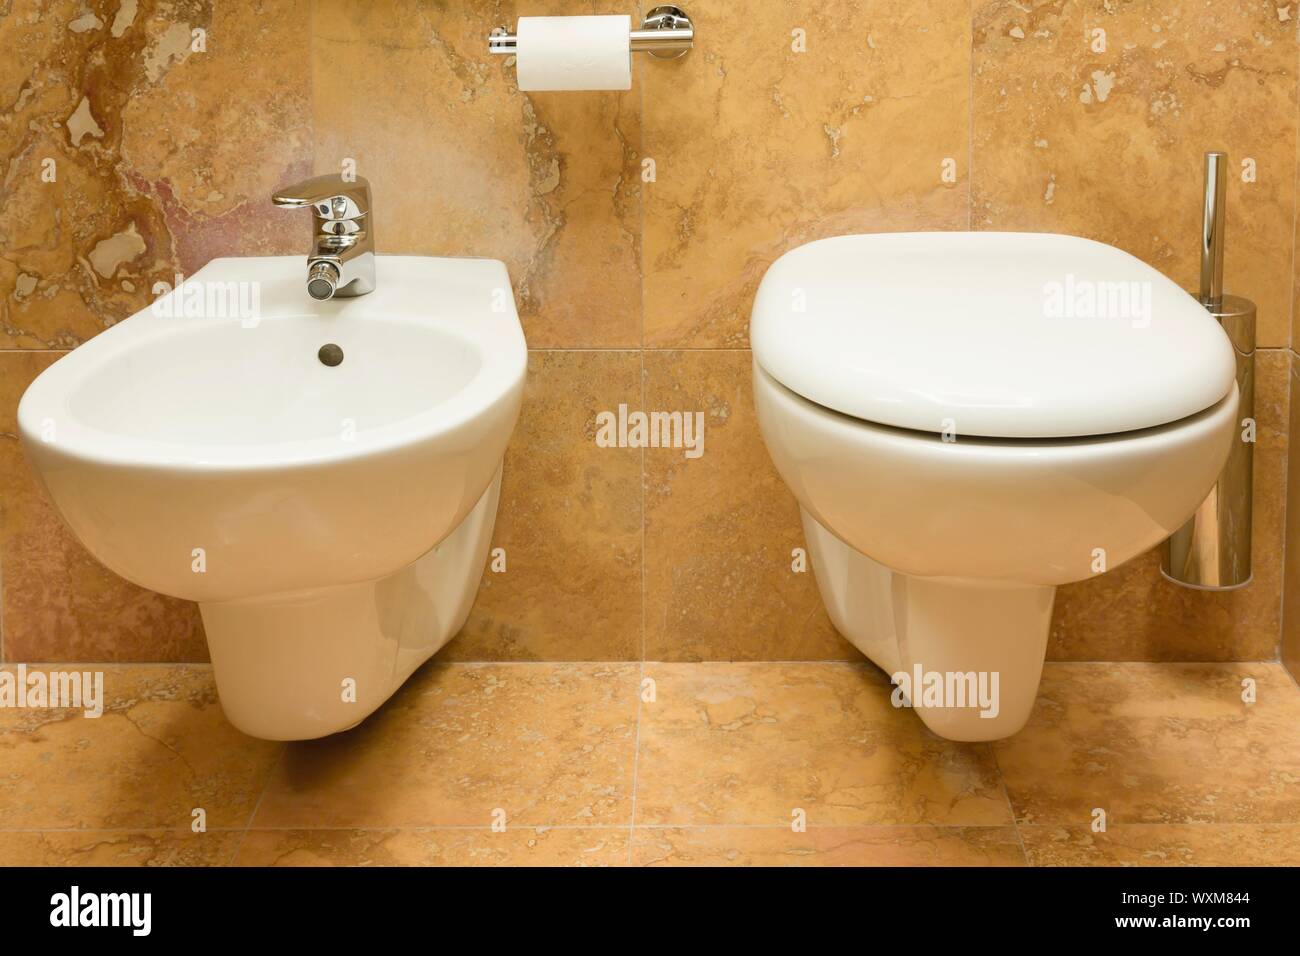 Toilettes et bidet dans une salle de bains de luxe Banque D'Images